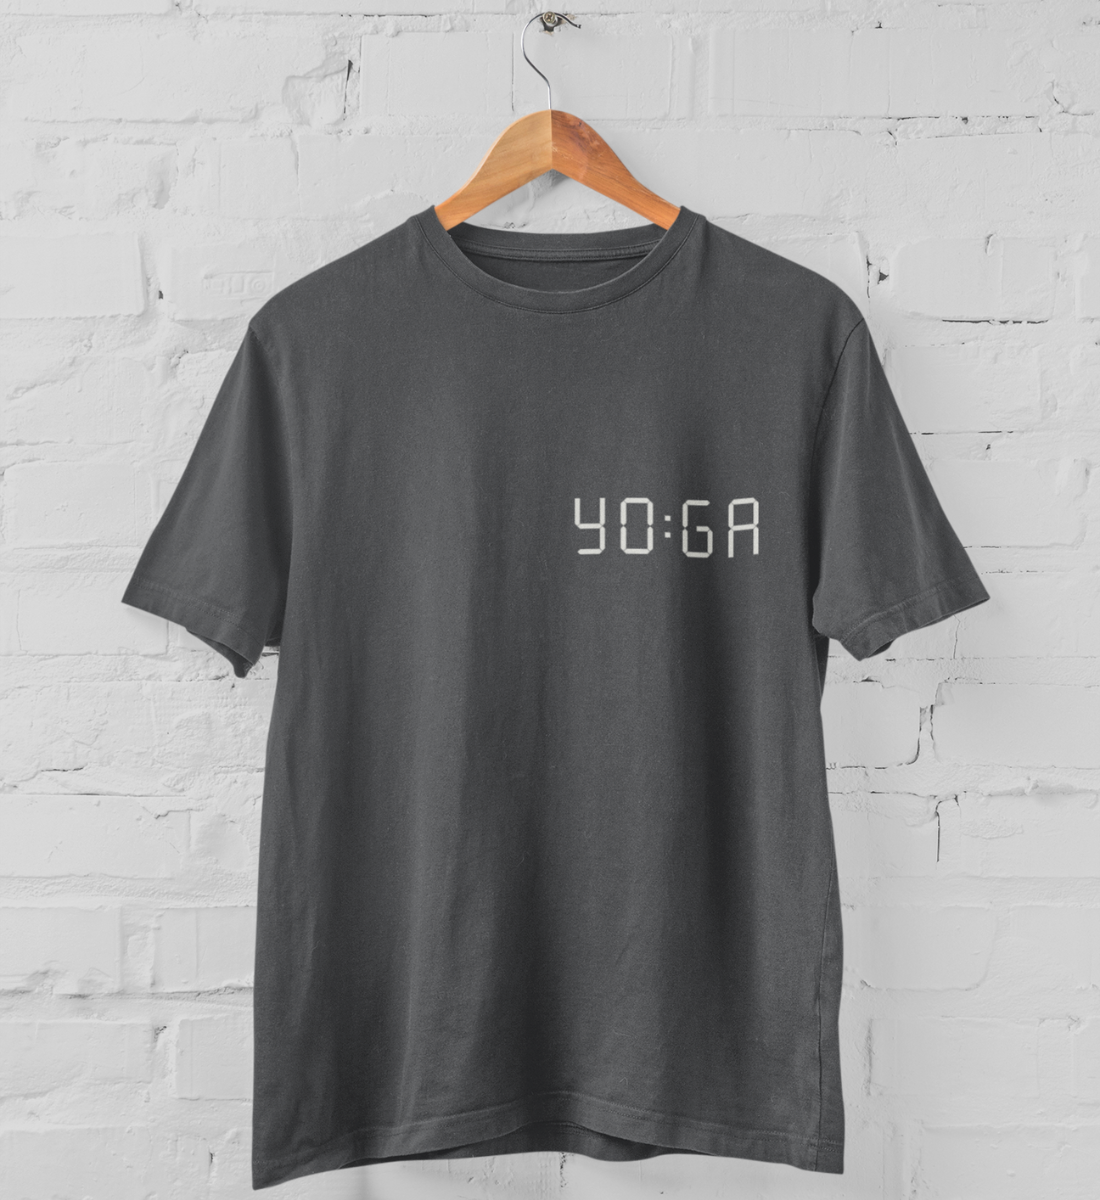 zeit für yoga l yoga t-shirt anthrazit l yoga oberteil l schöne yoga kleidung l nachhaltig und umweltfreundliche produkte online shoppen